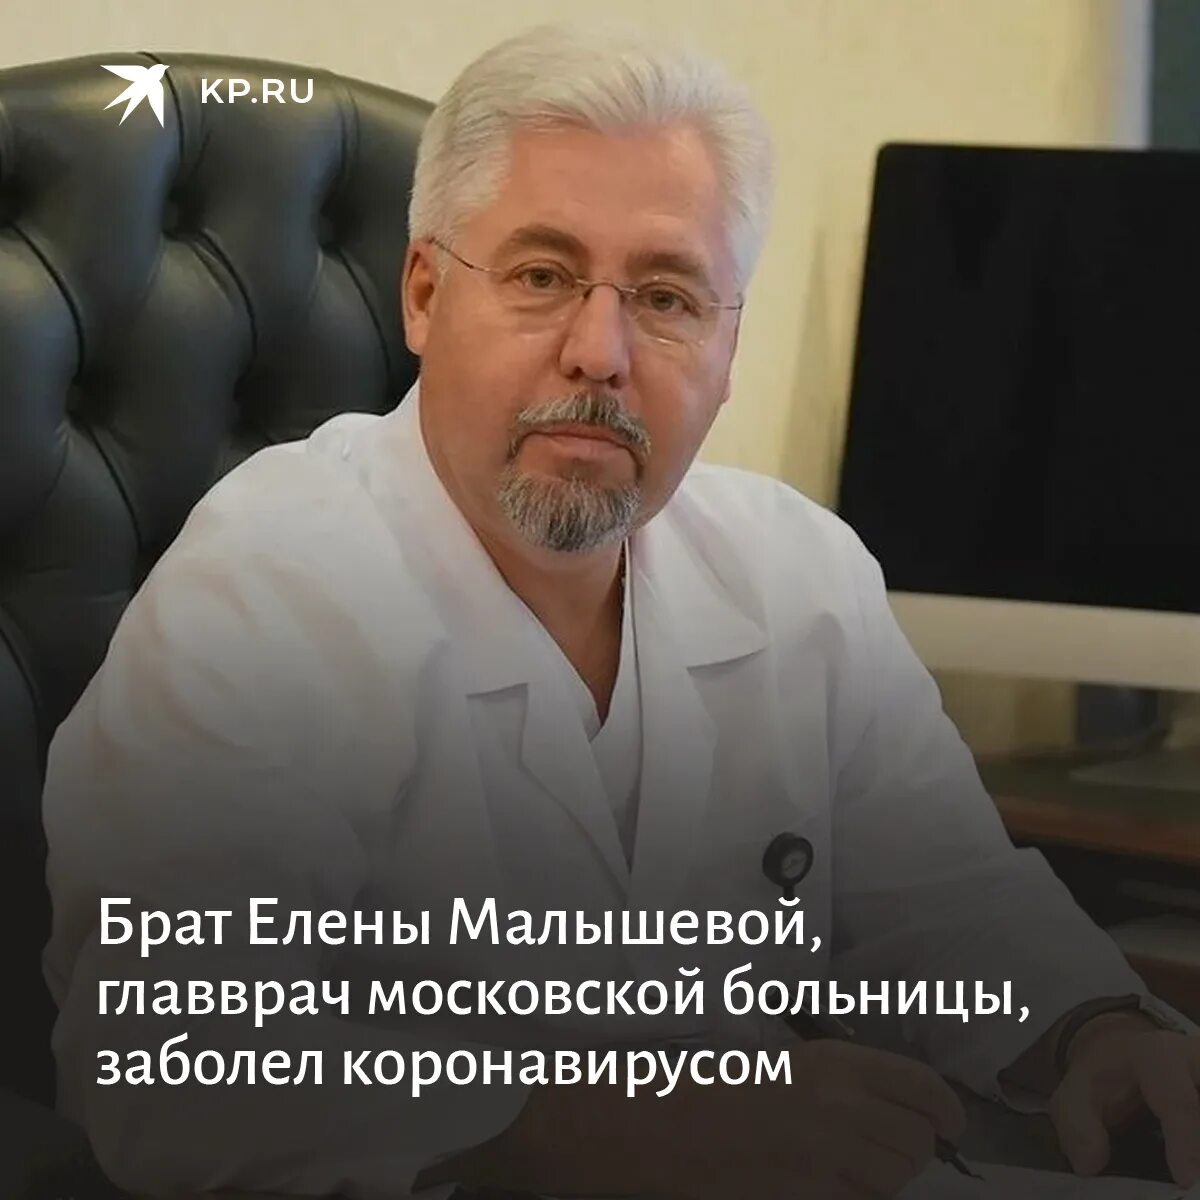 Главный врач Боткинской больницы в Москве. Боткинская больница врачи отзывы